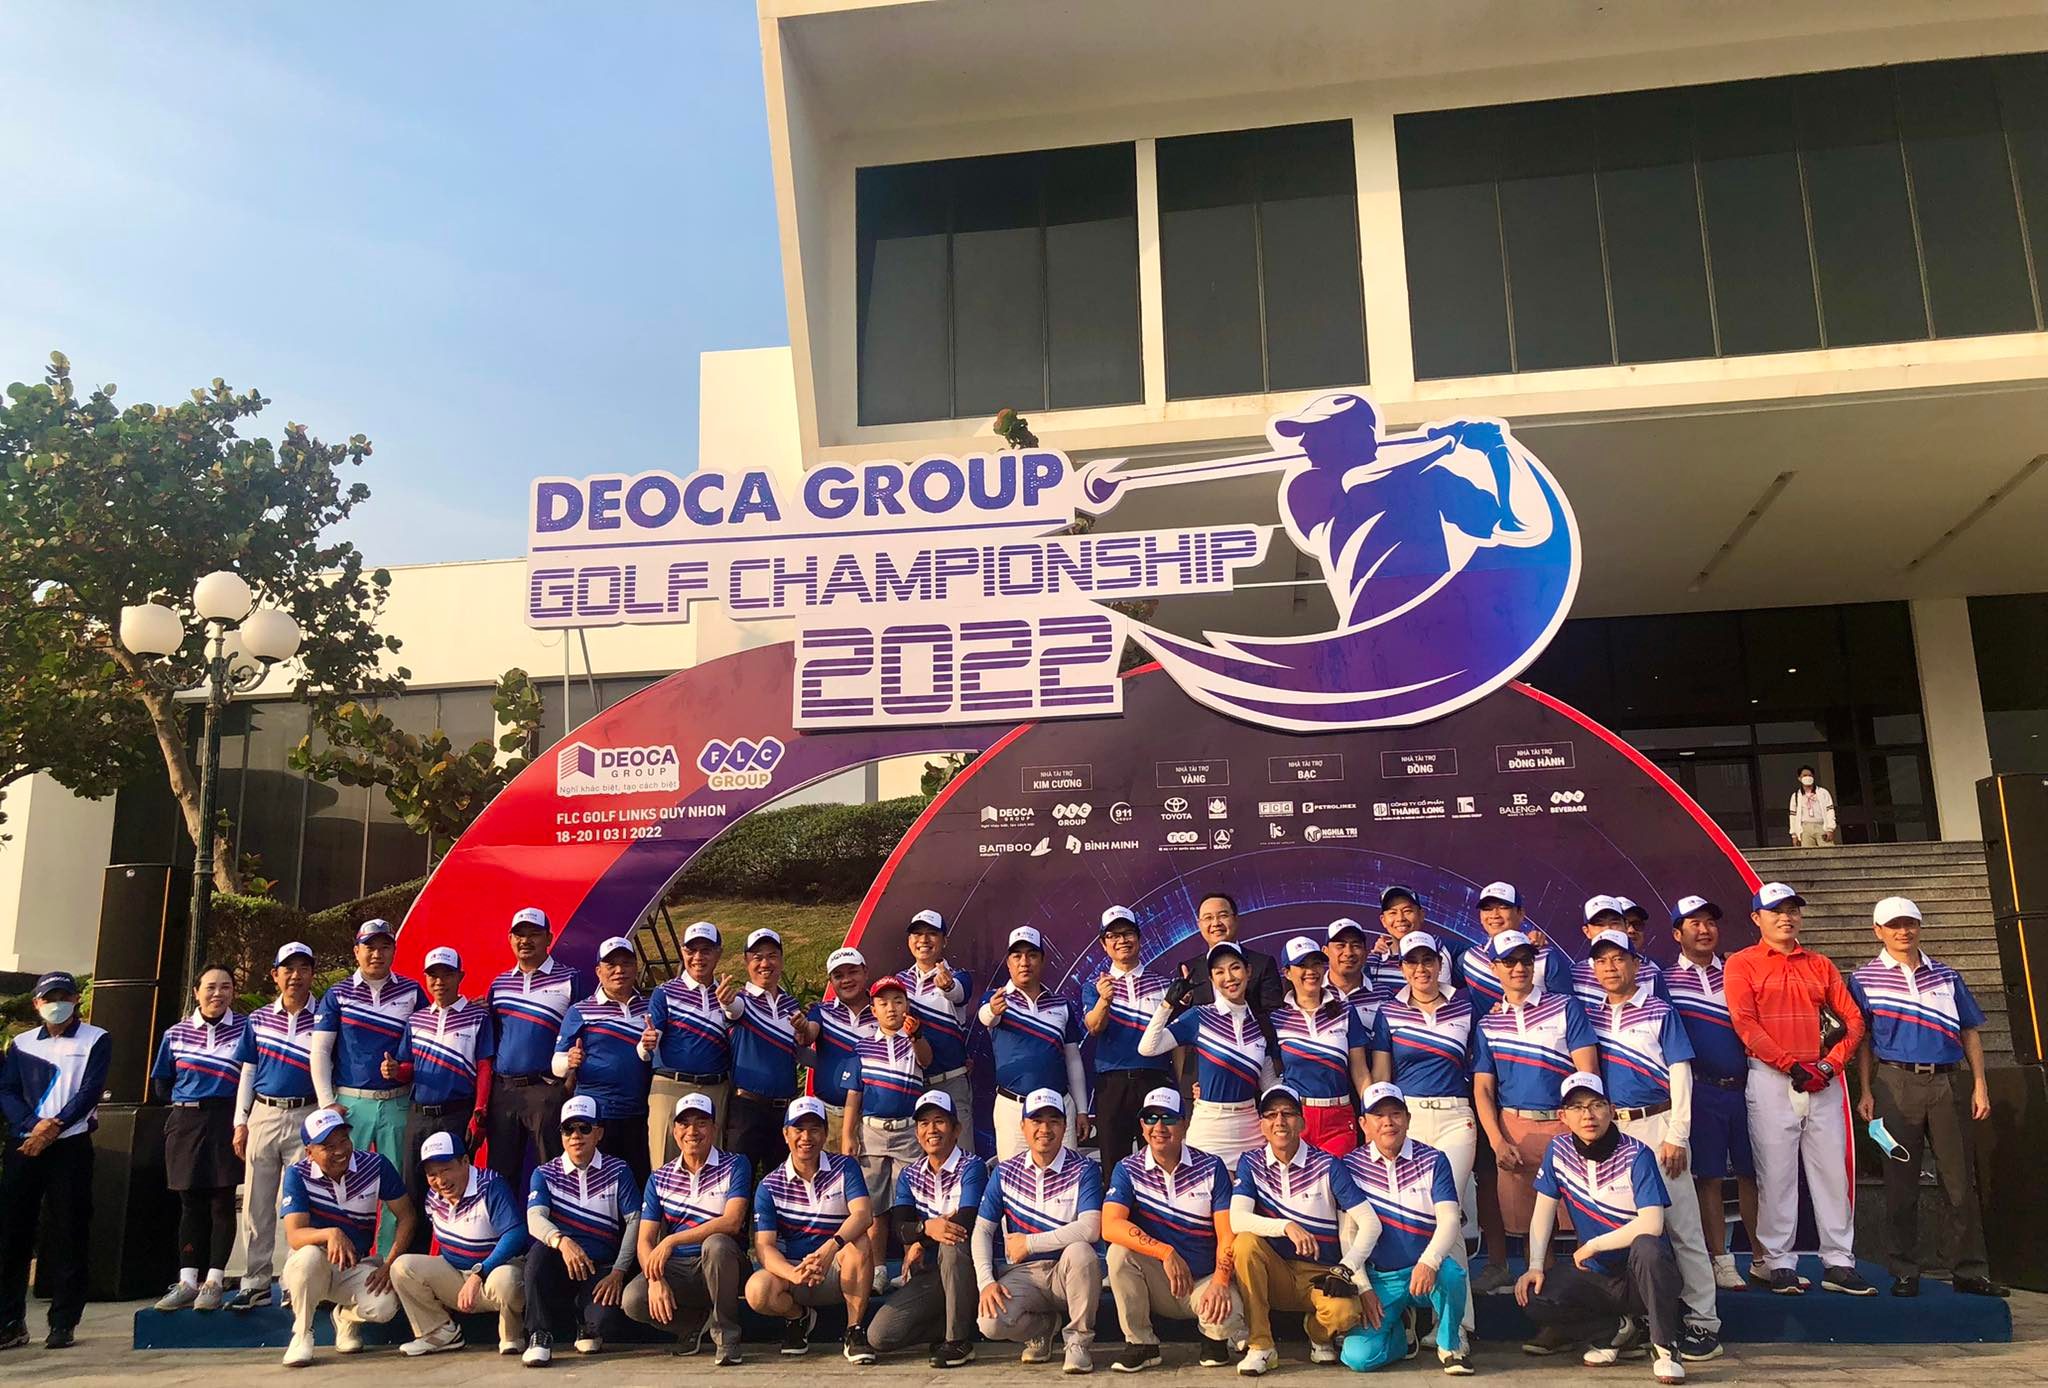 Chính thức khởi tranh giải DeoCa Group Golf Championship 2022 với giải thưởng hàng chục tỷ đồng